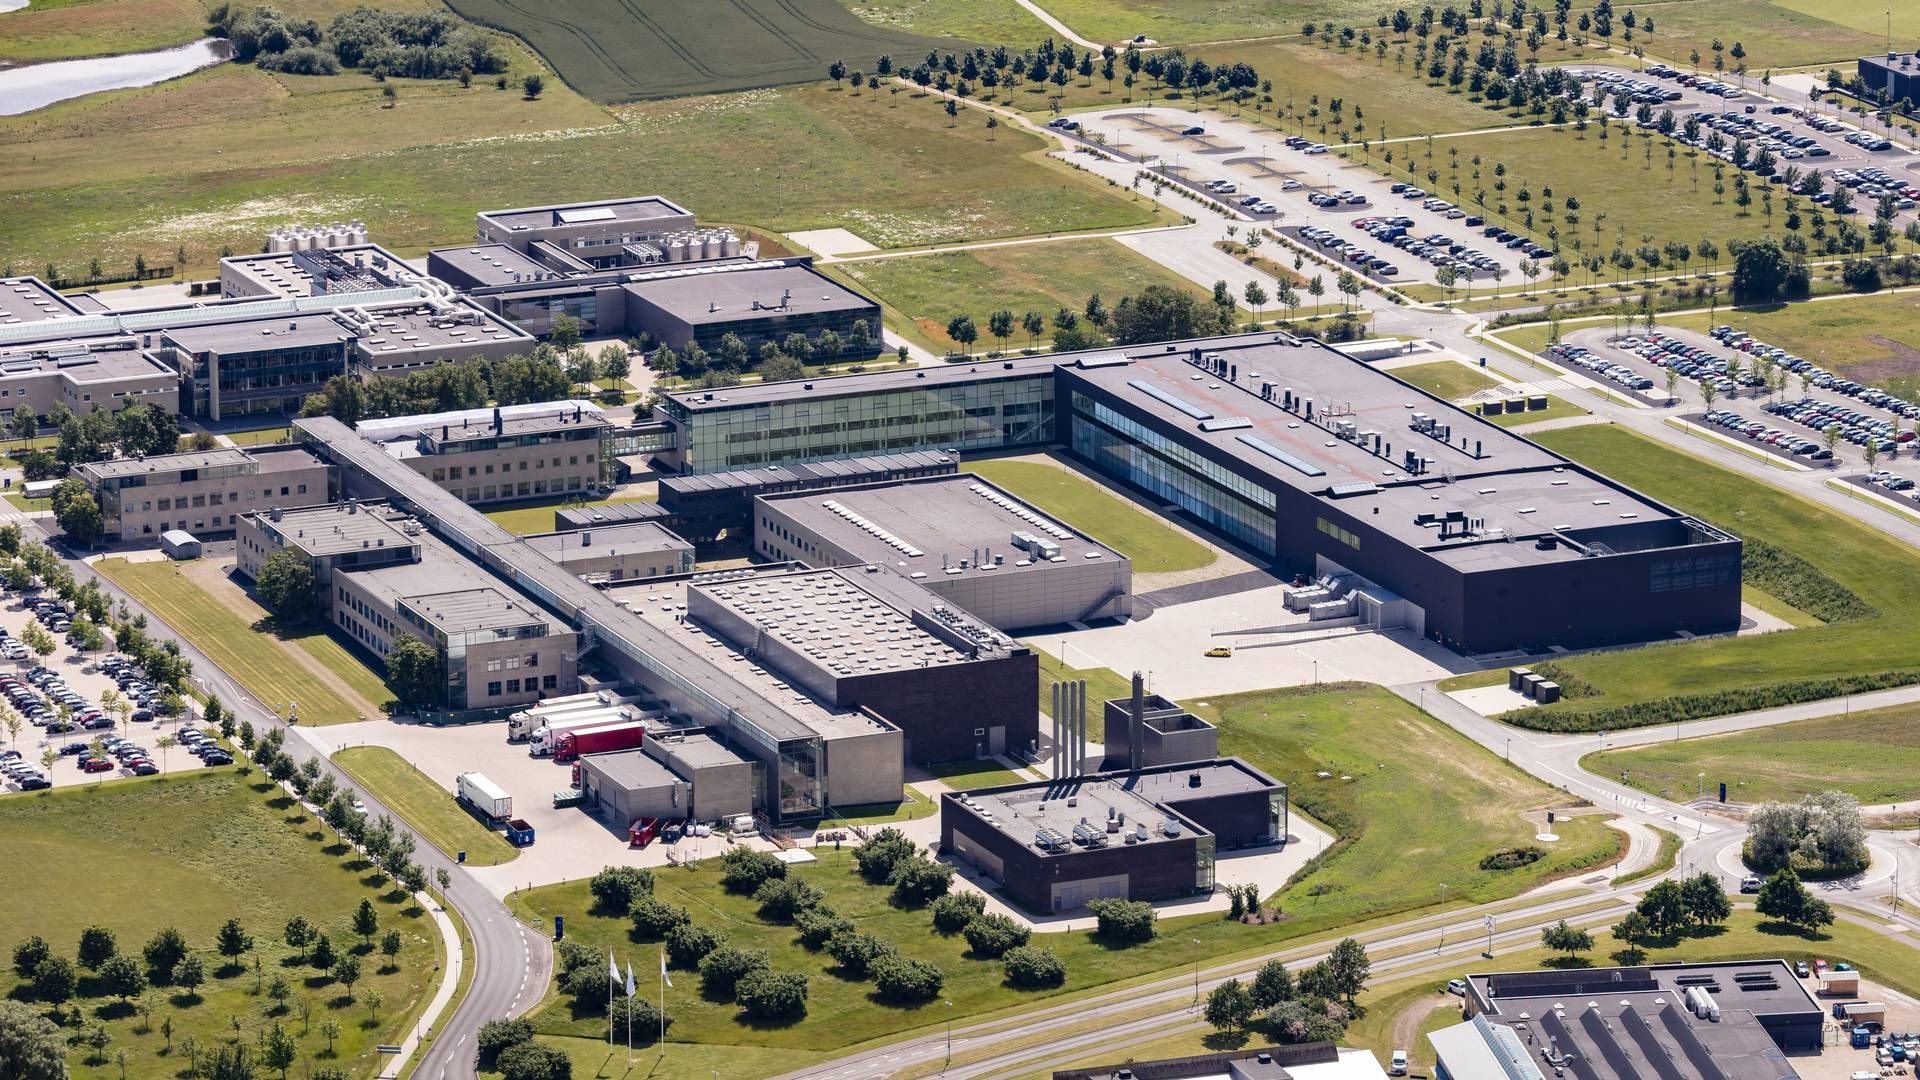 VIL UTVIDE: Novo Nordisk venter at utvidelsn av produksjonsfasilitetene i Hillerød vil skape 340 nye jobber. | Foto: Novo Nordisk / Pr